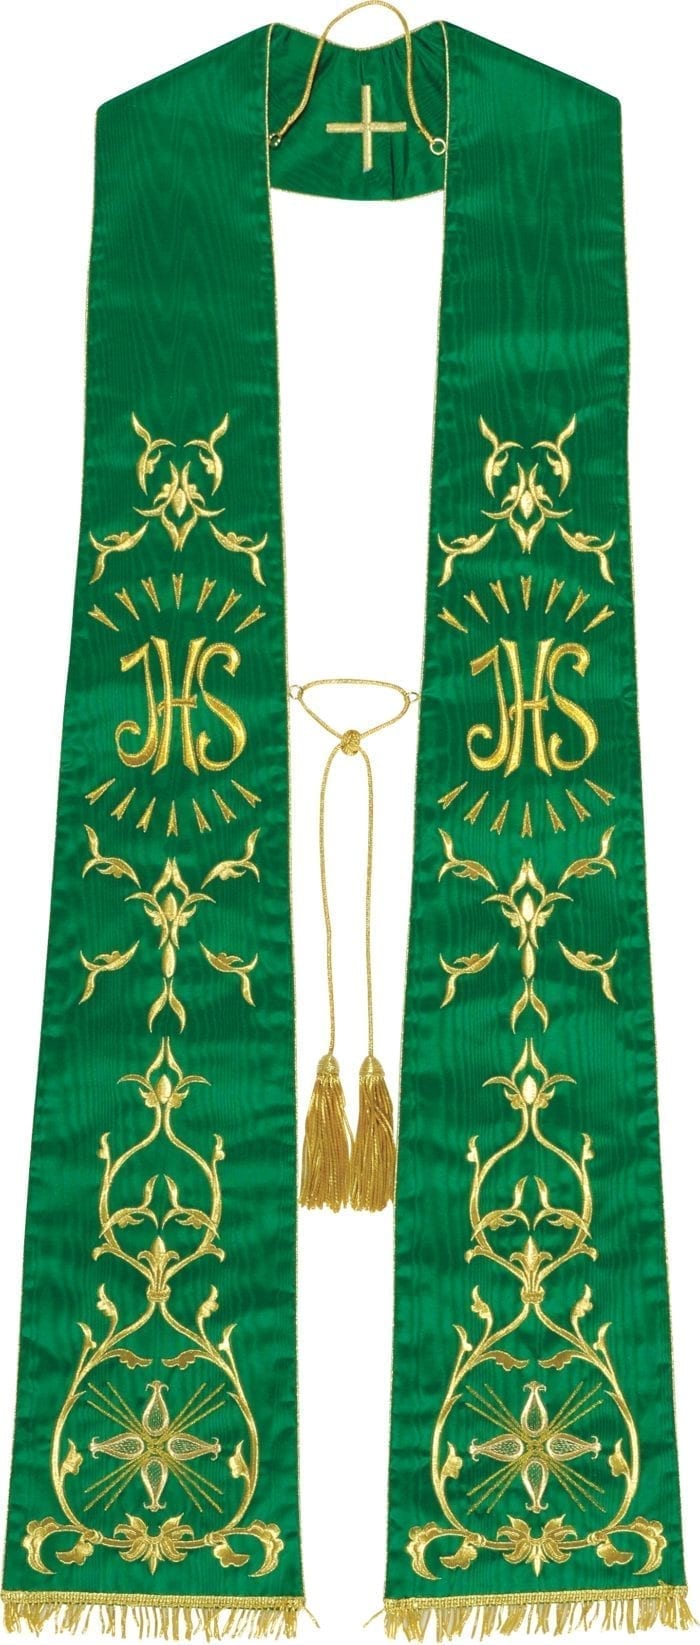 Stola “Jesus” Maranatha Lab dal taglio classico in pura seta con ricami in oro e simbolo Jhs